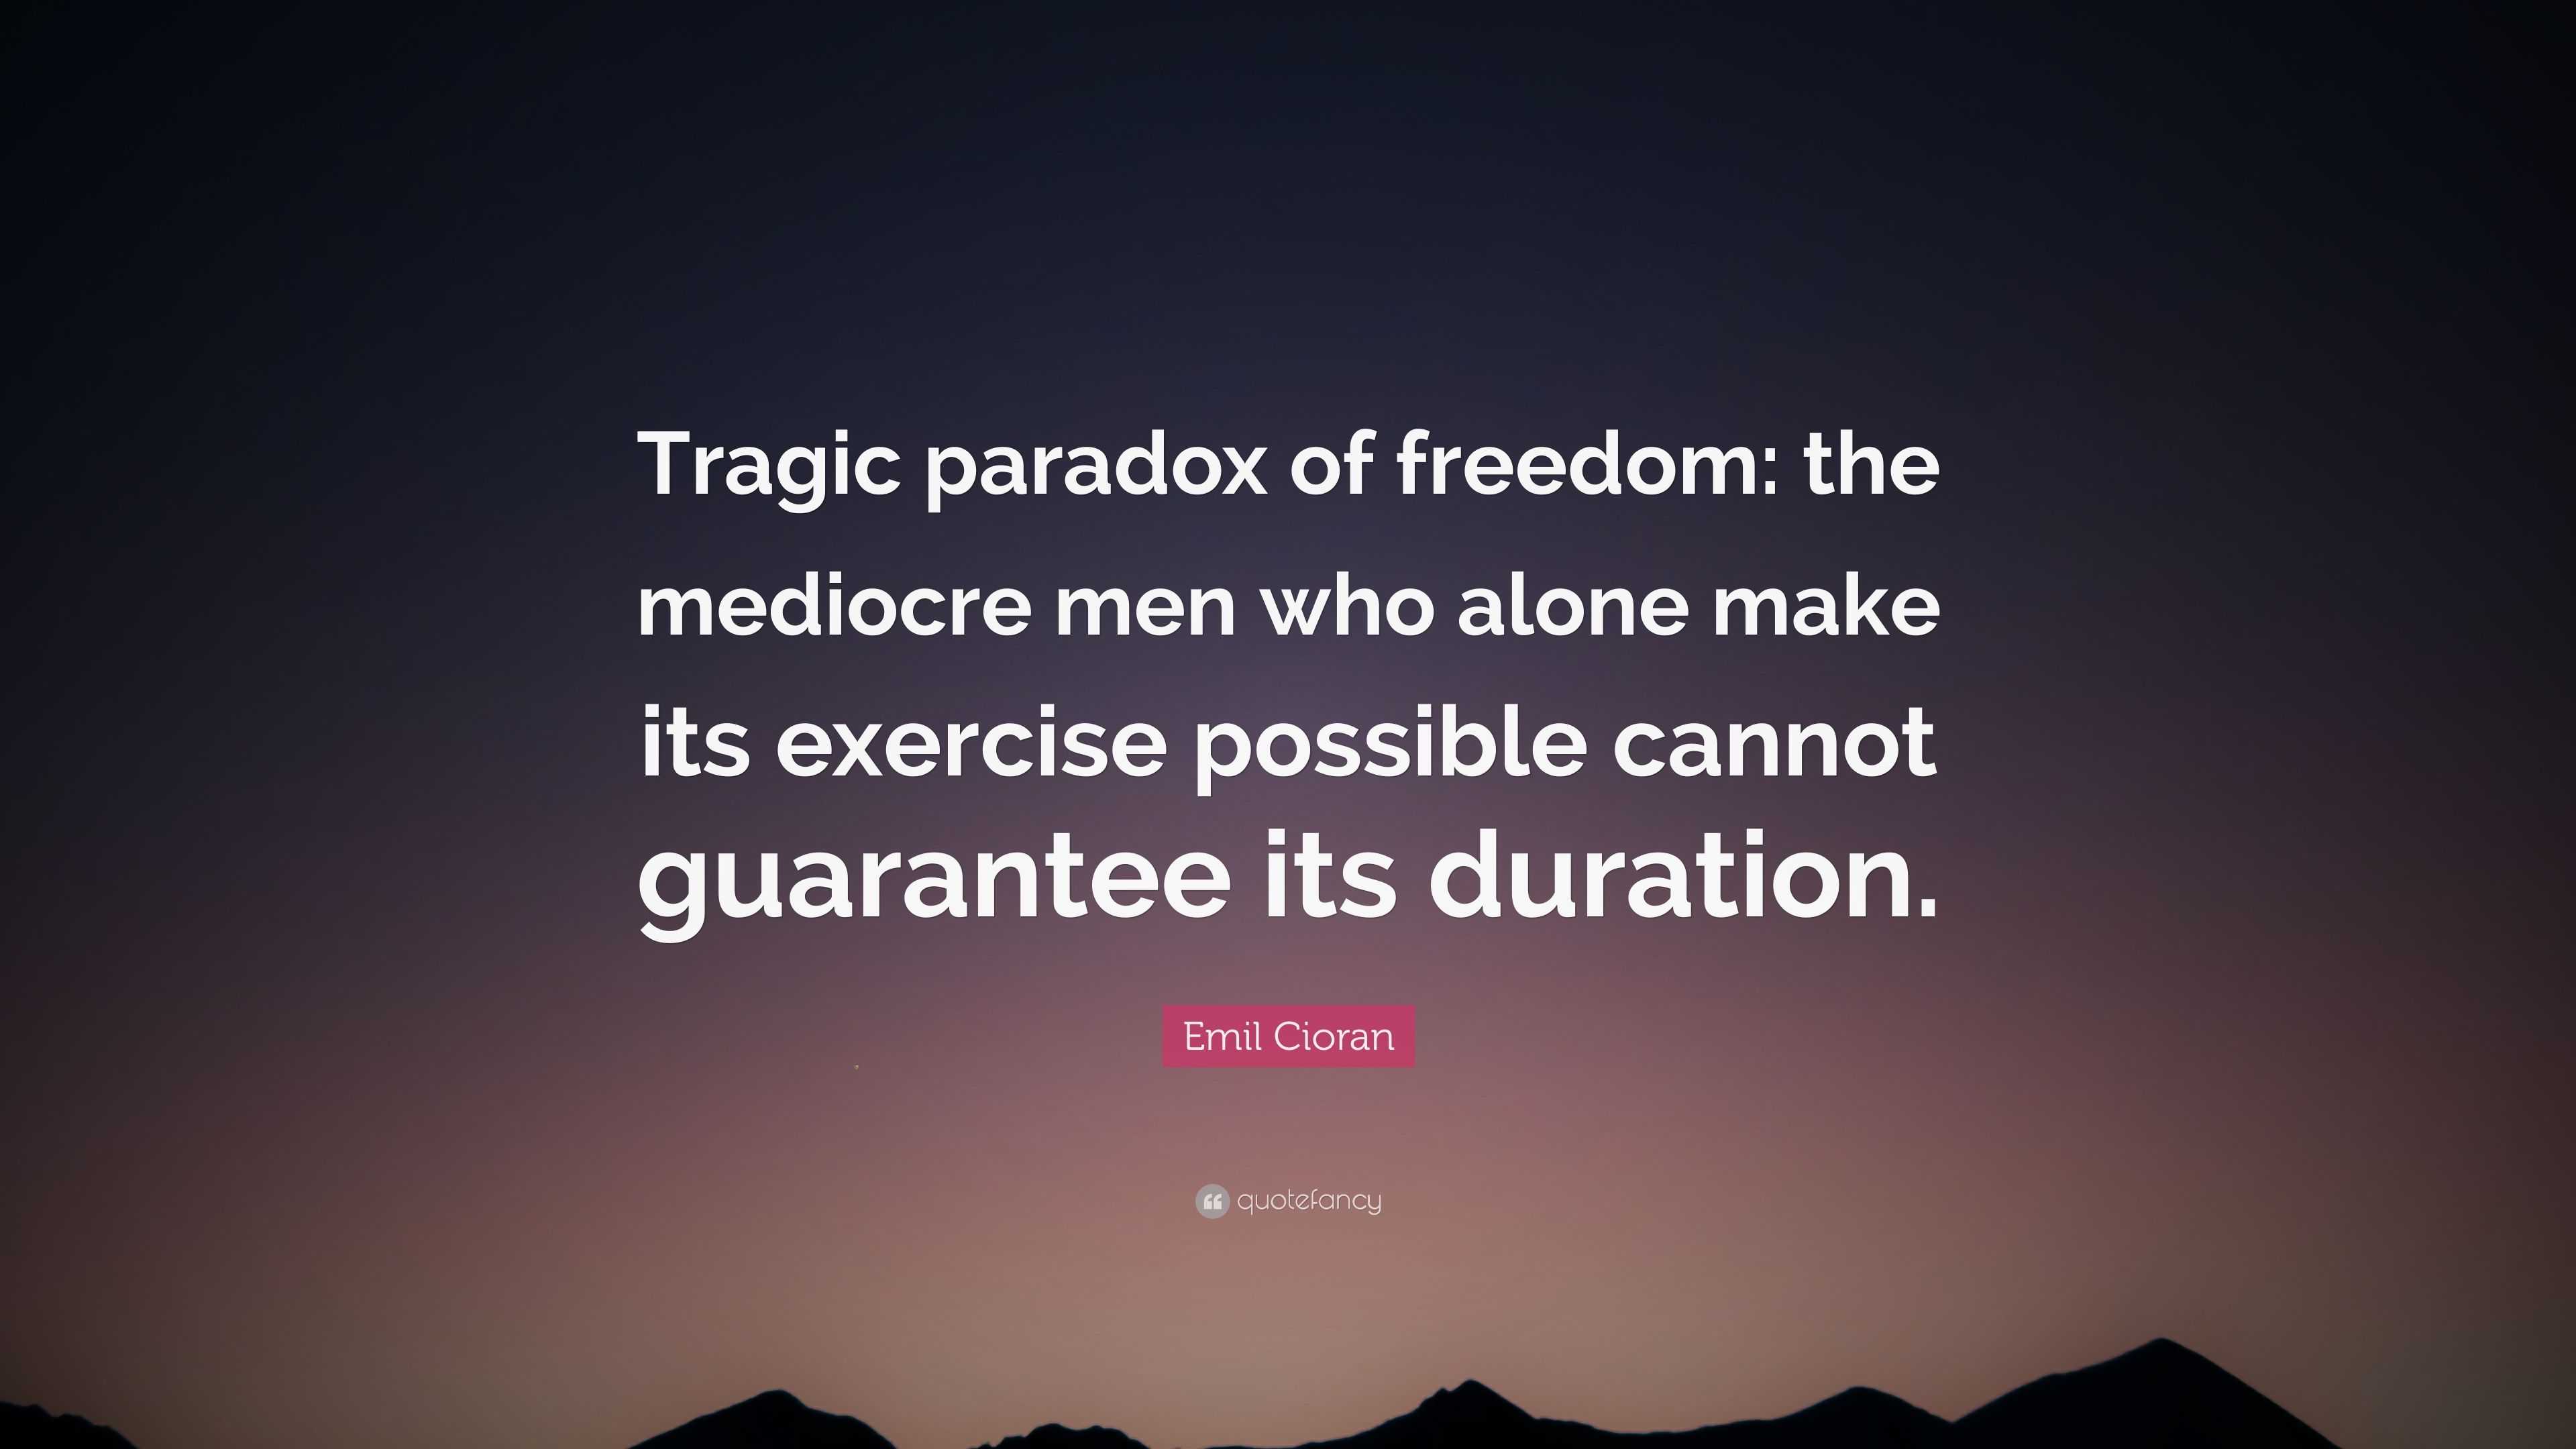 Emil Cioran Quote: “Tragic paradox of freedom: the mediocre men